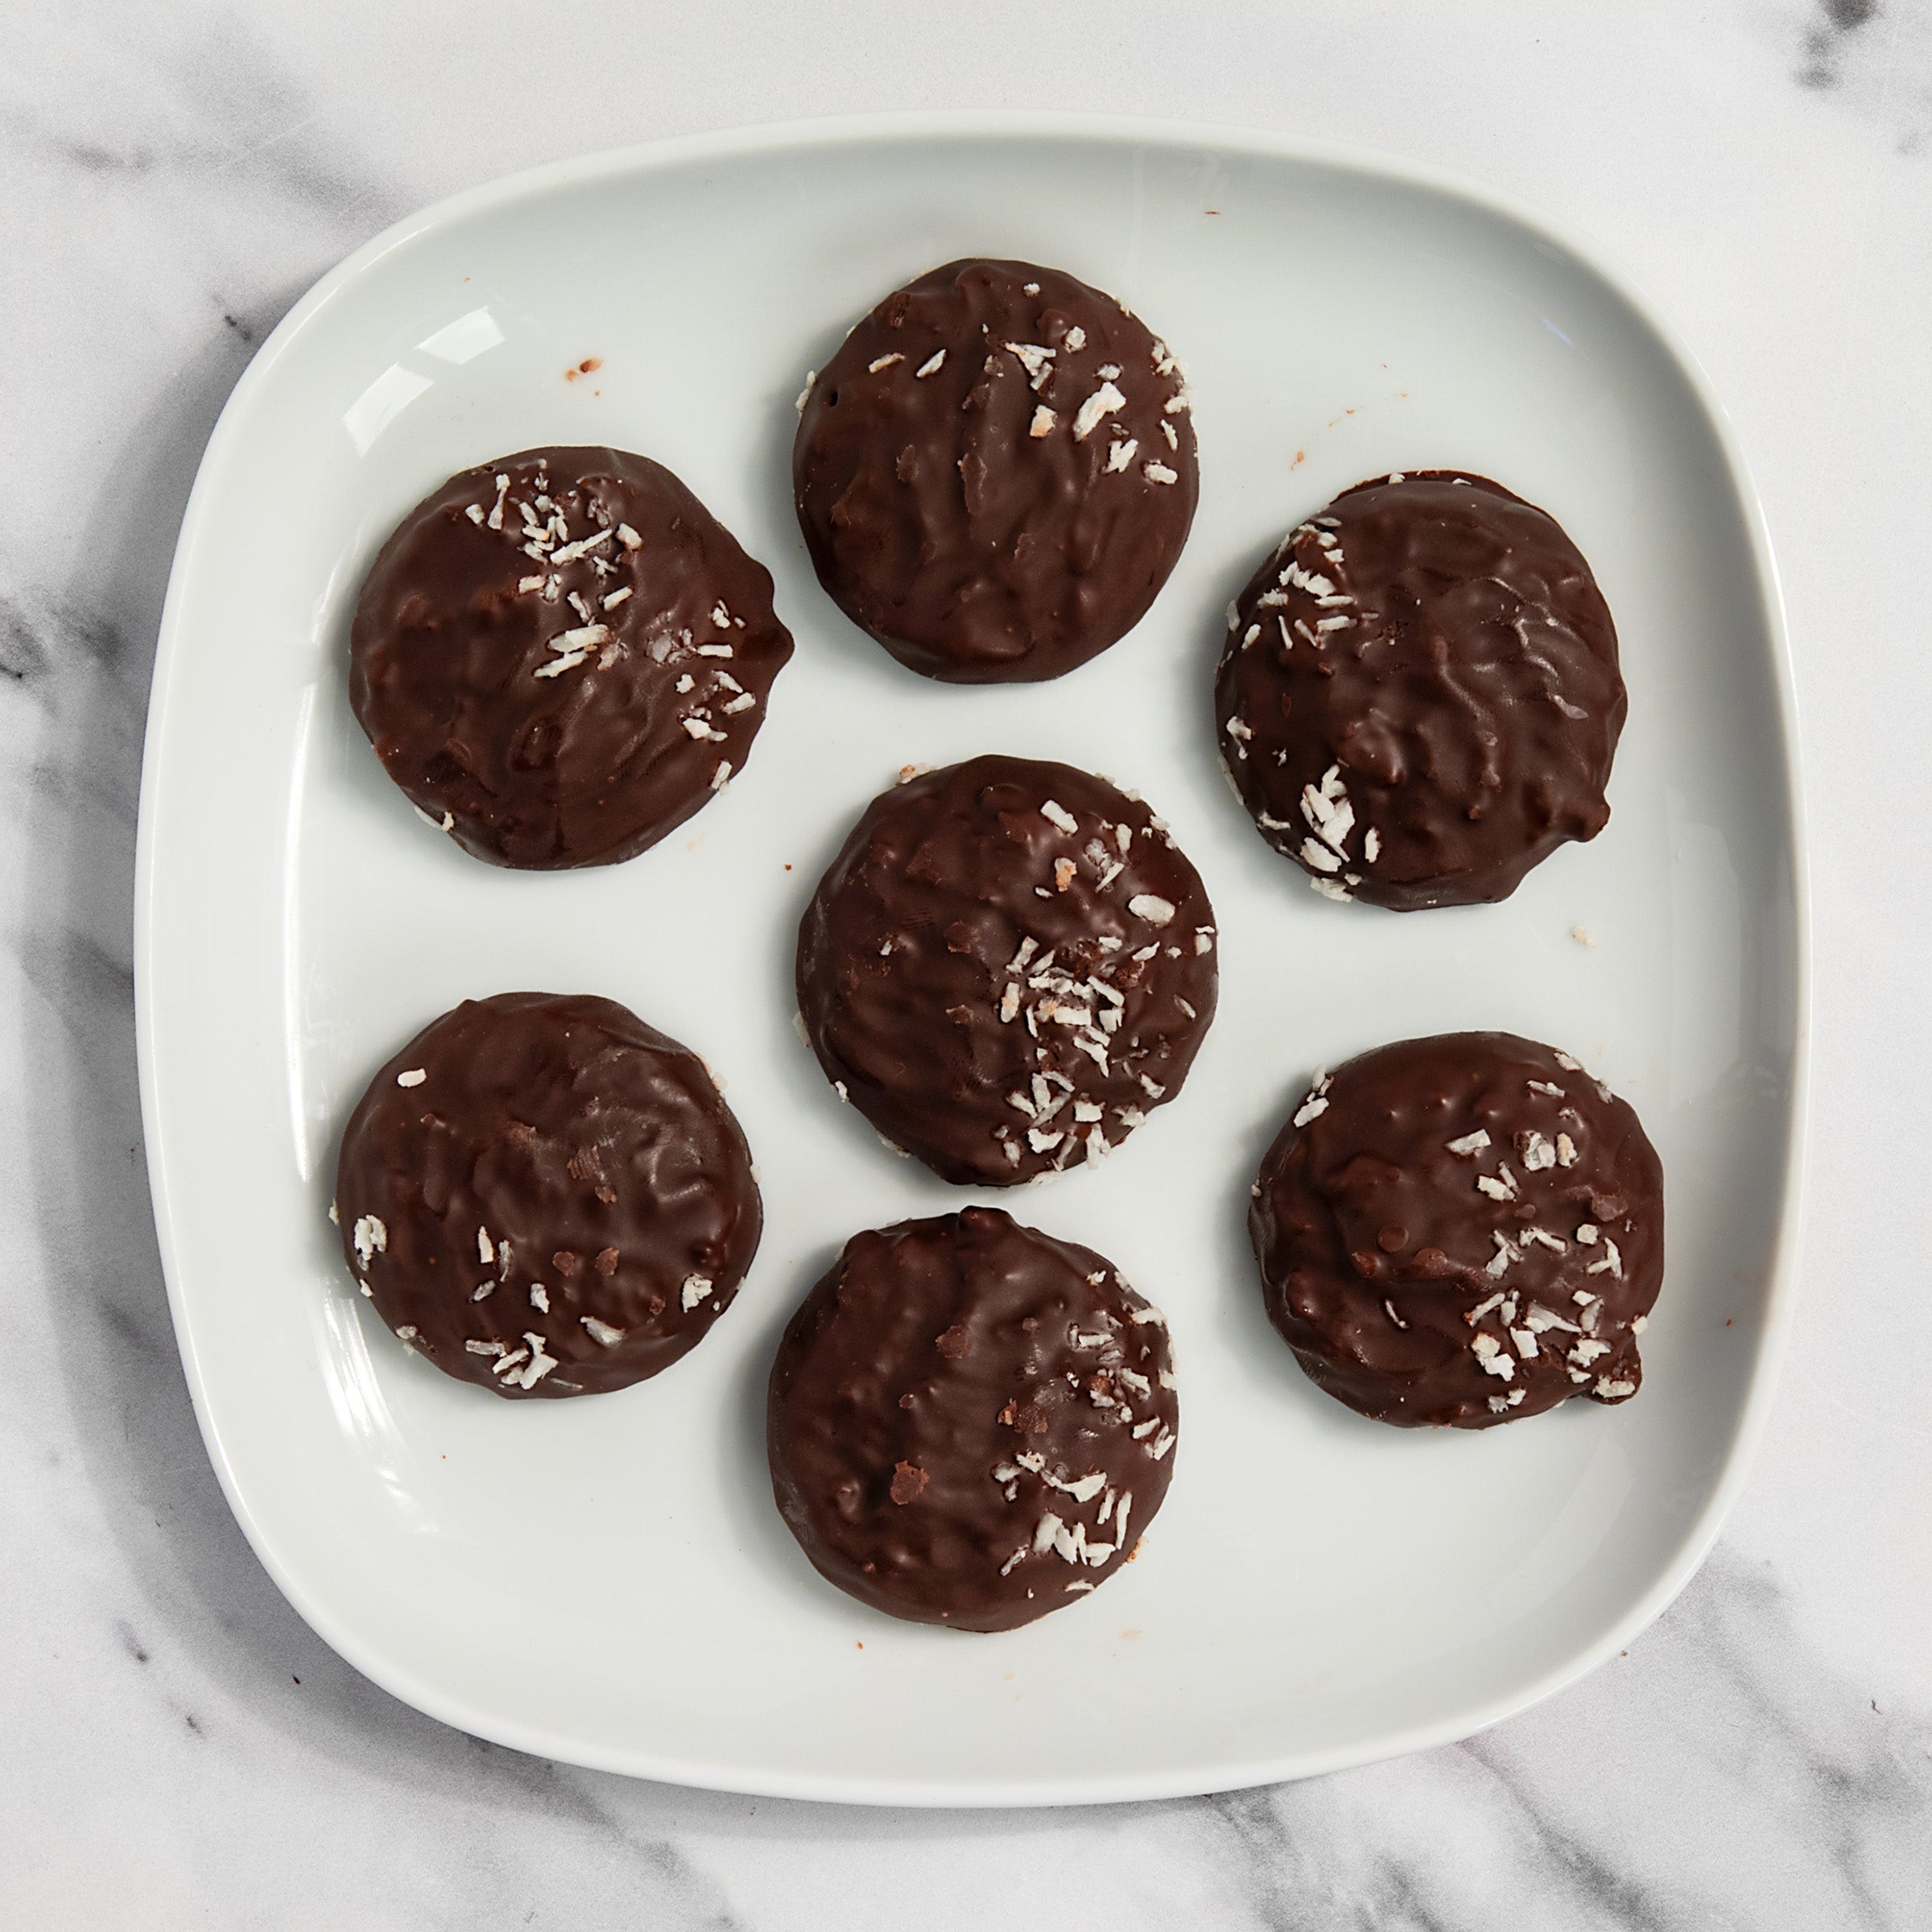 igourmet_15848_Coconut Biscuits with Dark Chocolate Glaze_Bottega Pisani_Cookies & Biscuits